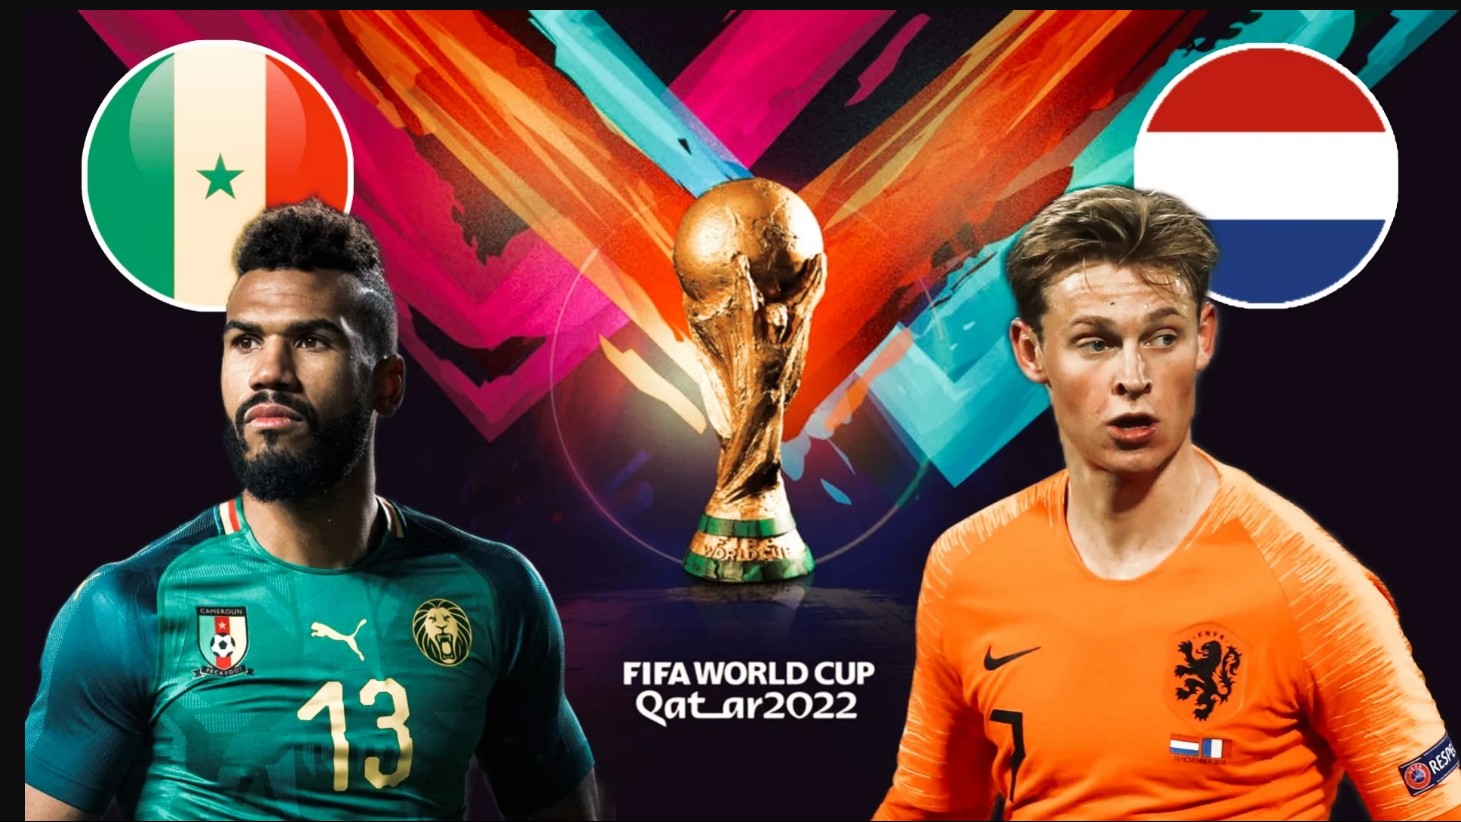 Nhận định, link xem trực tiếp Senegal vs Hà Lan 23h00 ngày 21/11/2022, vòng bảng World Cup 2022